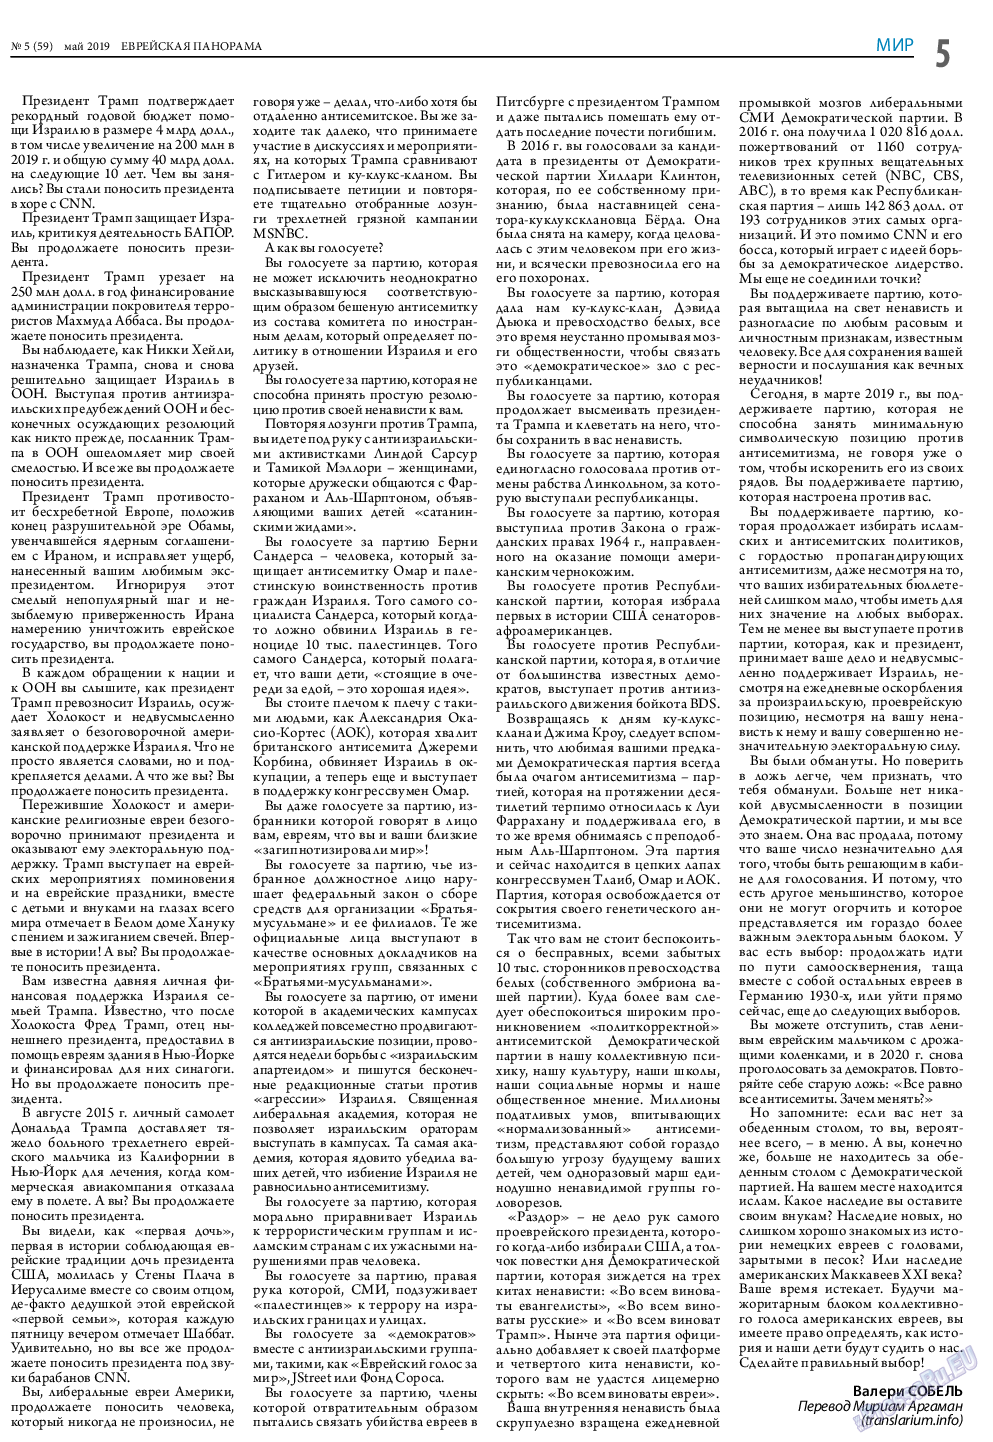 Еврейская панорама (газета). 2019 год, номер 5, стр. 5